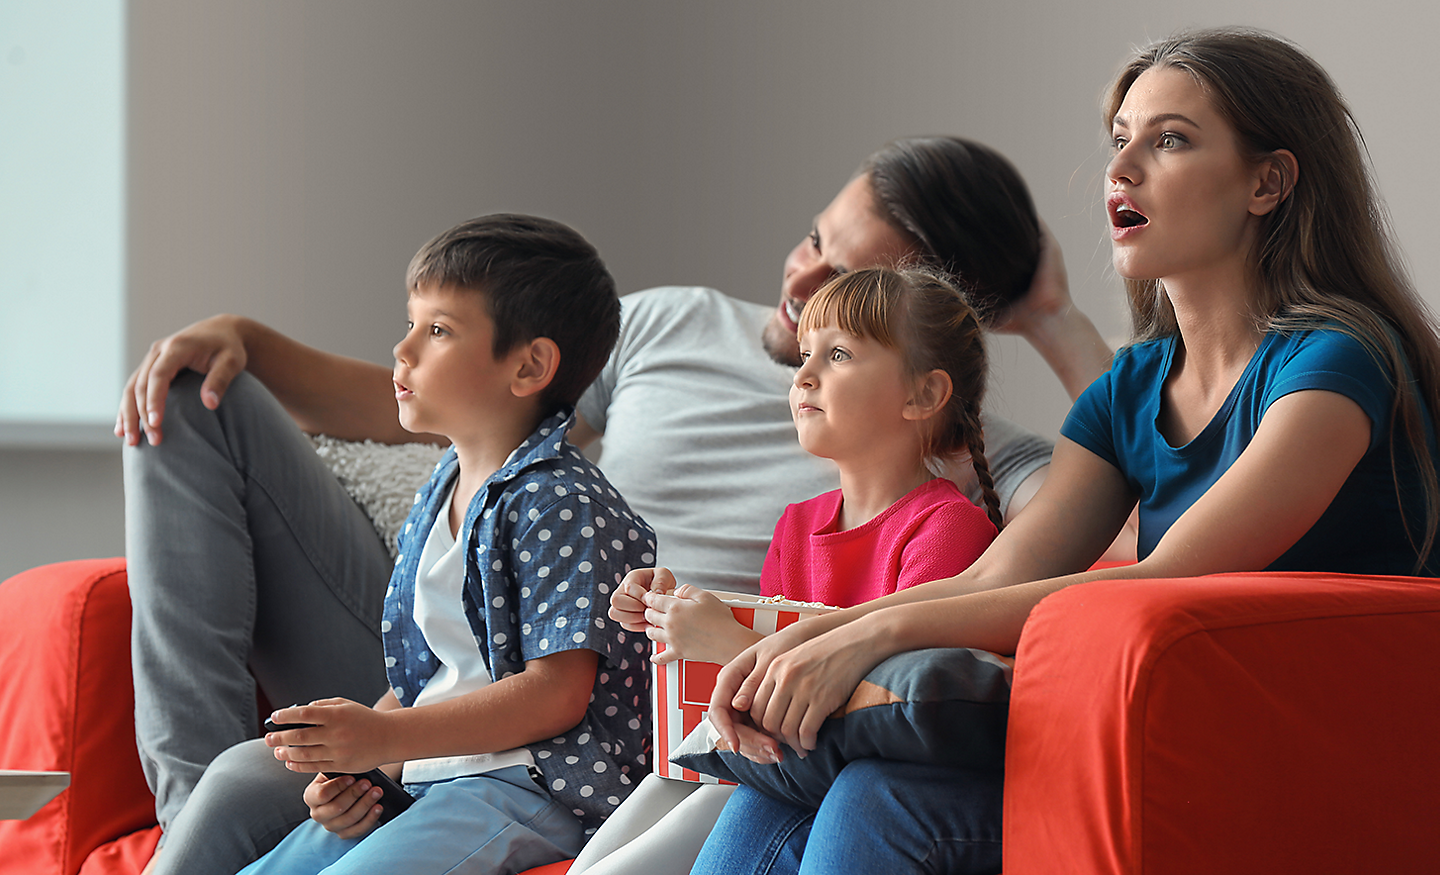 Une famille de quatre personnes sur un canapé, captivées par ce qu'elles regardent sur le téléviseur